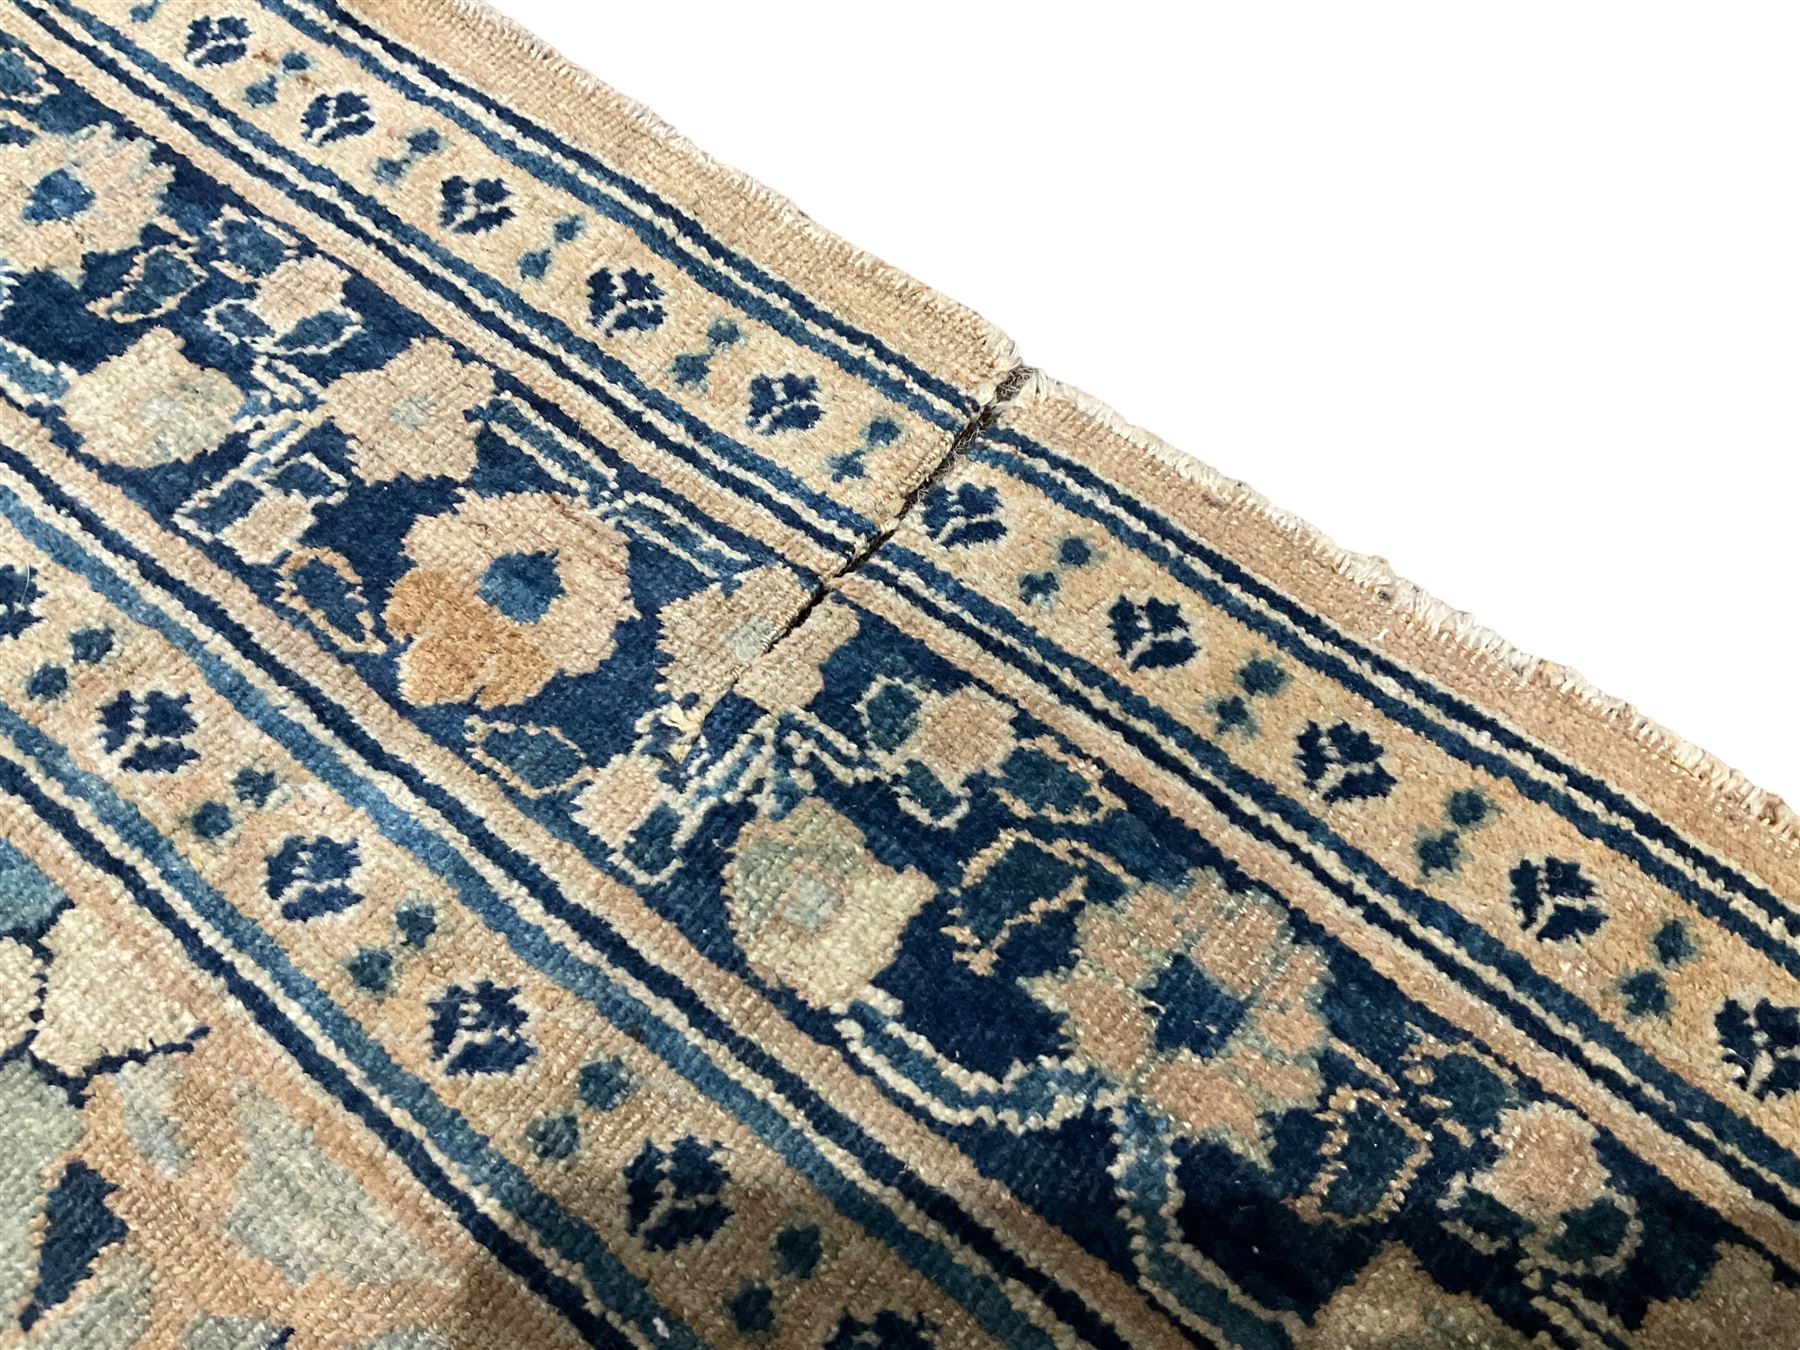 Antique Persian Nain indigo and ivory rug - Image 3 of 6